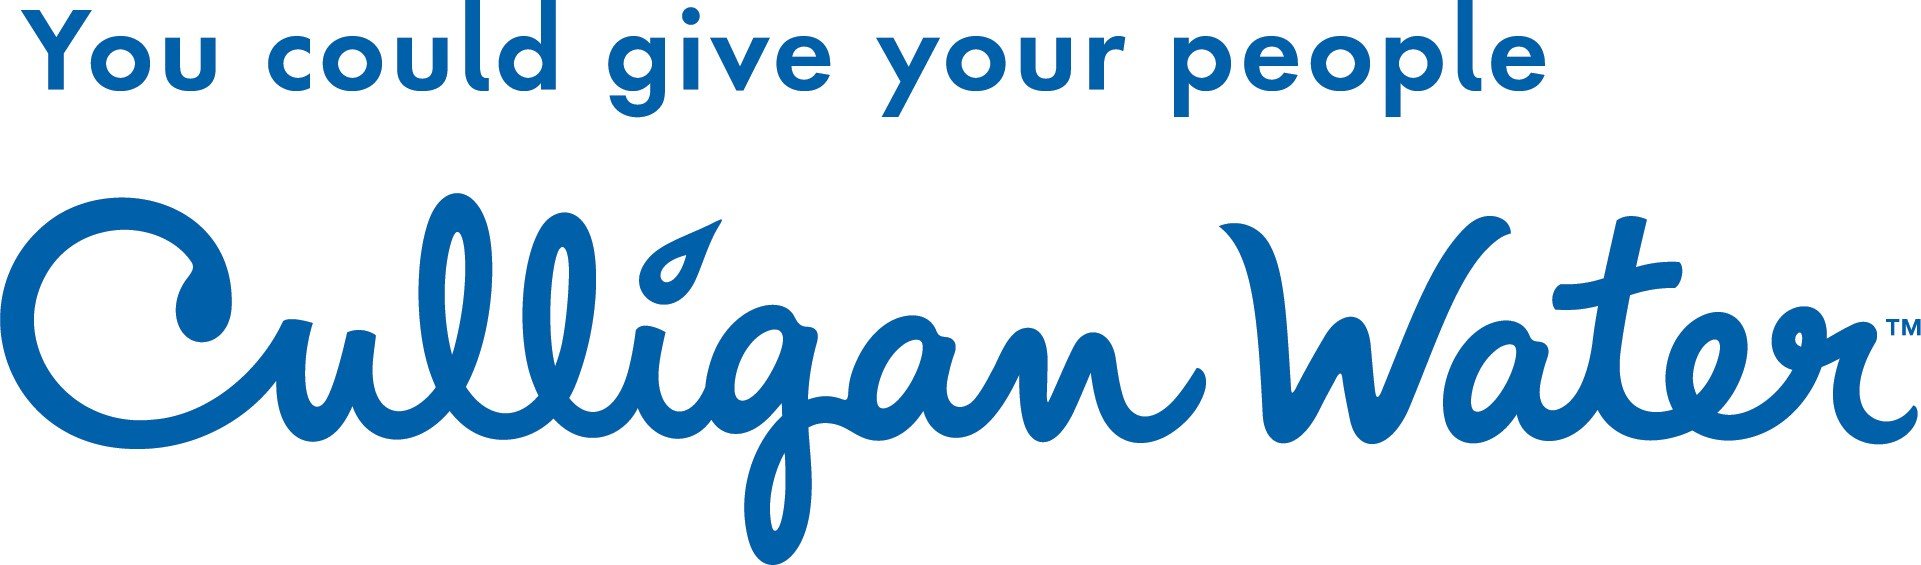 Culligan Water Logo.jpg